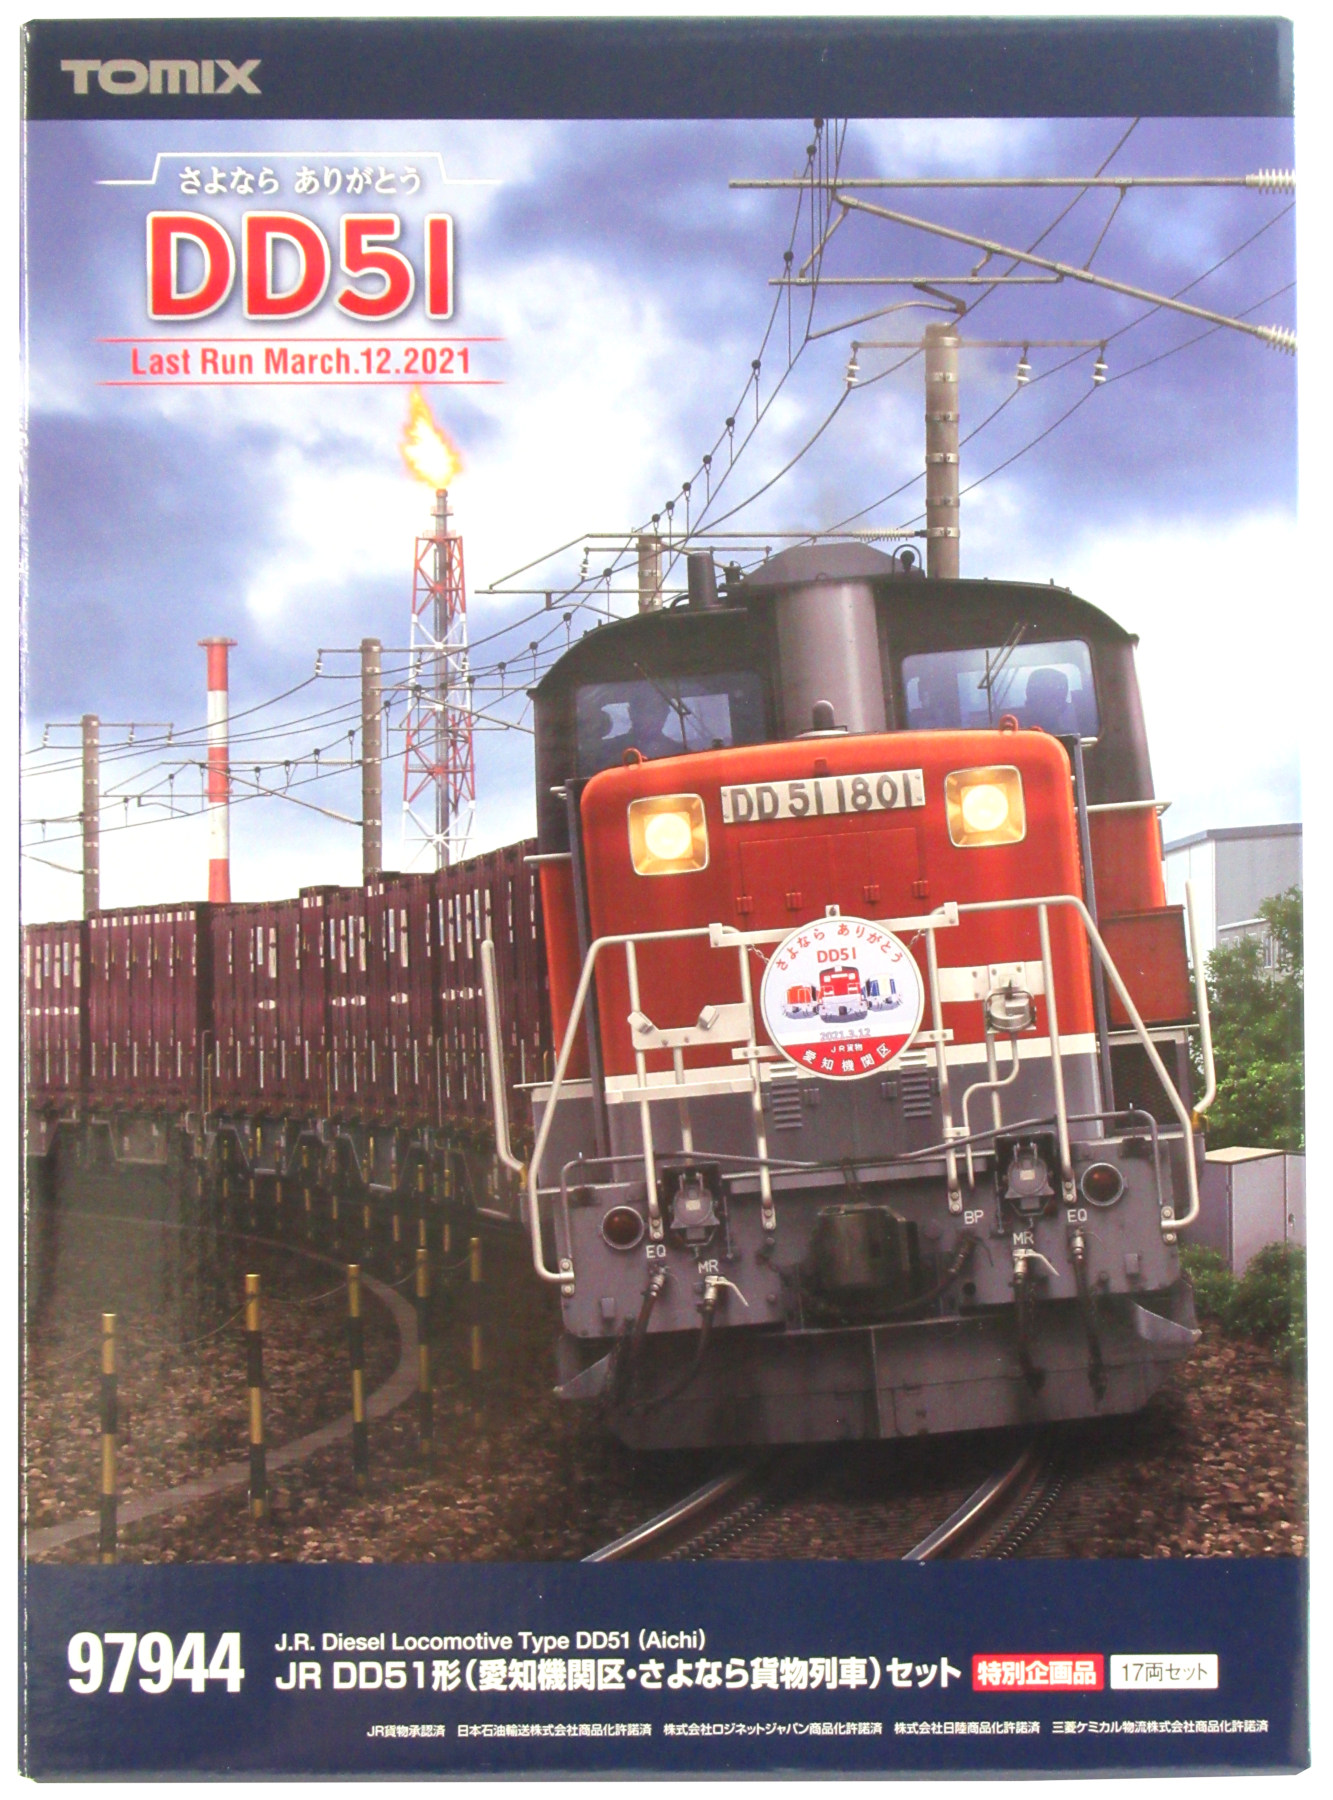 公式]鉄道模型(97944JR DD51形 (愛知機関区・さよなら貨物列車) 17両 